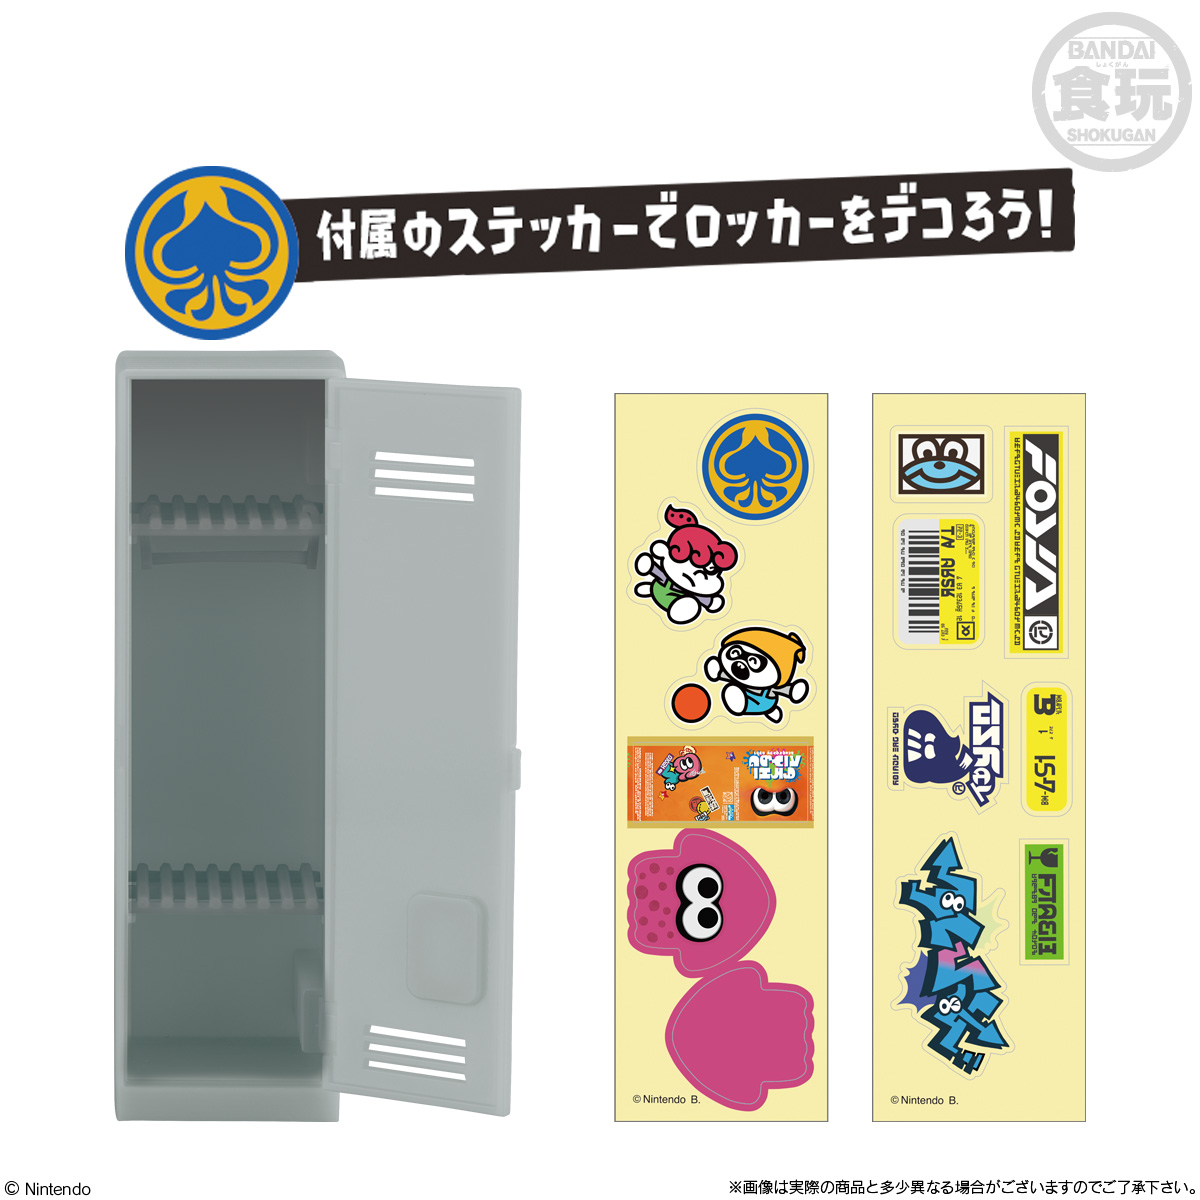 【食玩】スプラトゥーン2『きせかえギアコレクション 復刻版』8個入りBOX-009